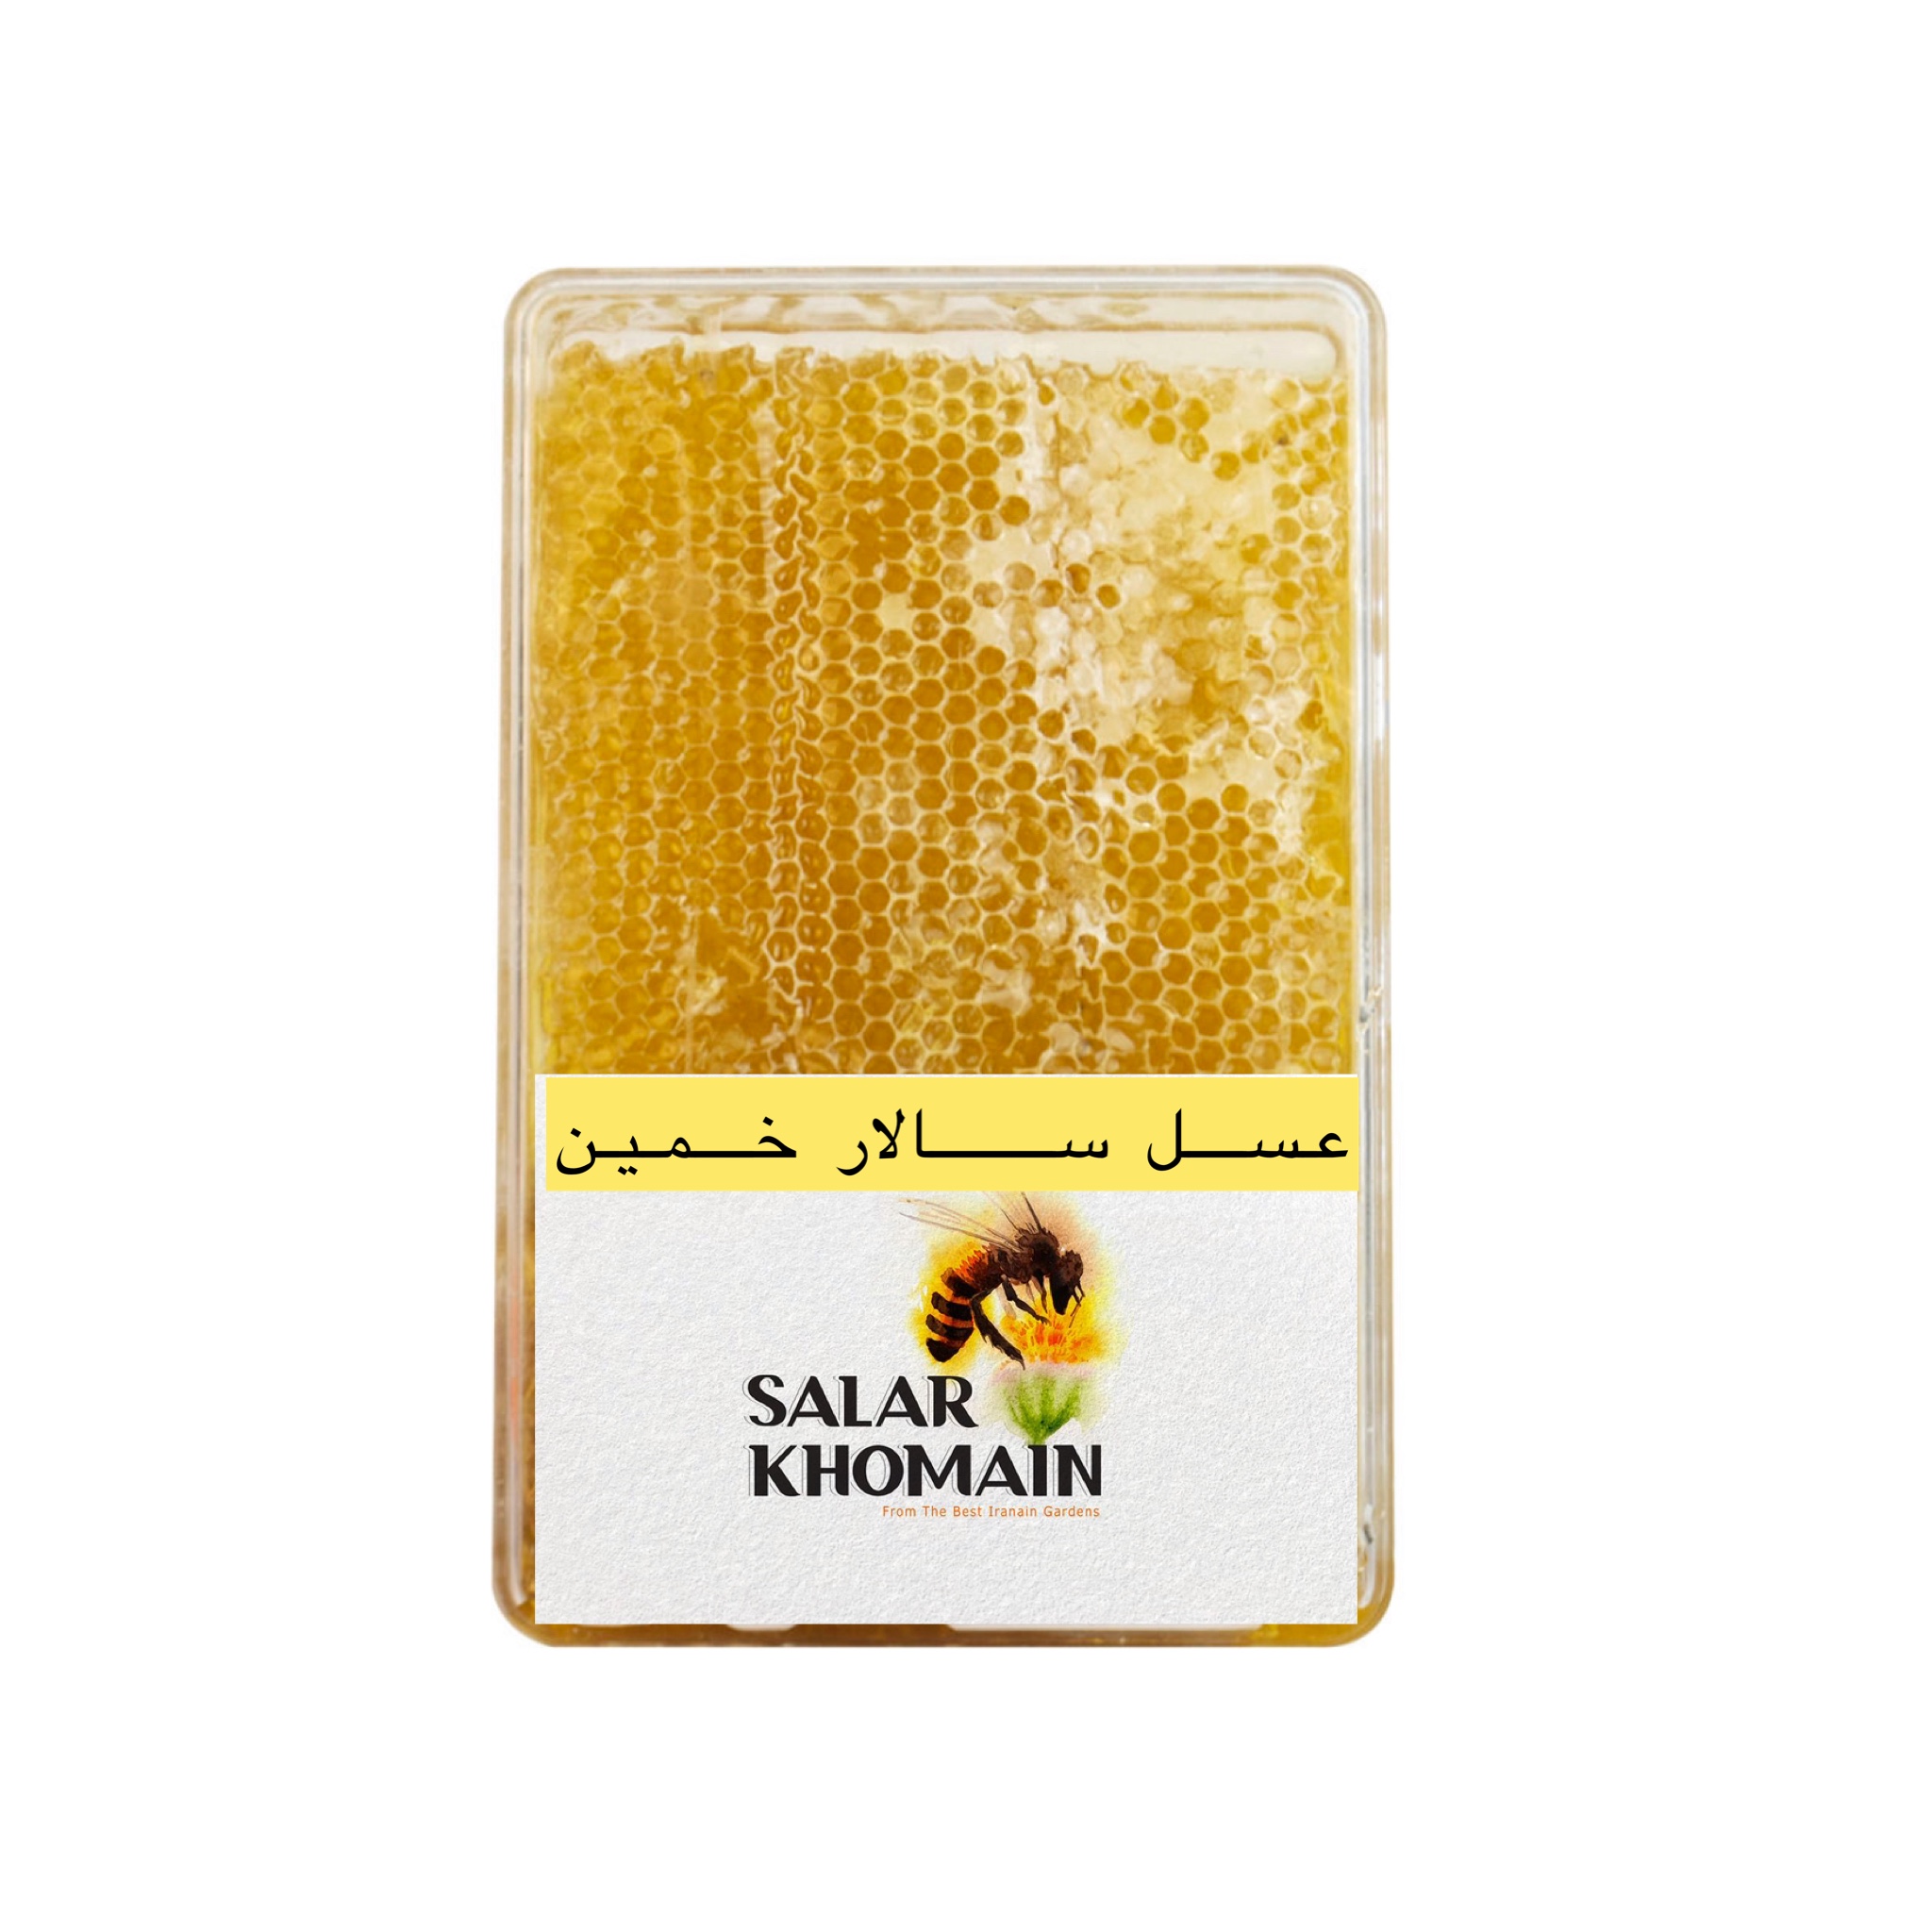 عسل باموم سالار خمین - 1000 گرم